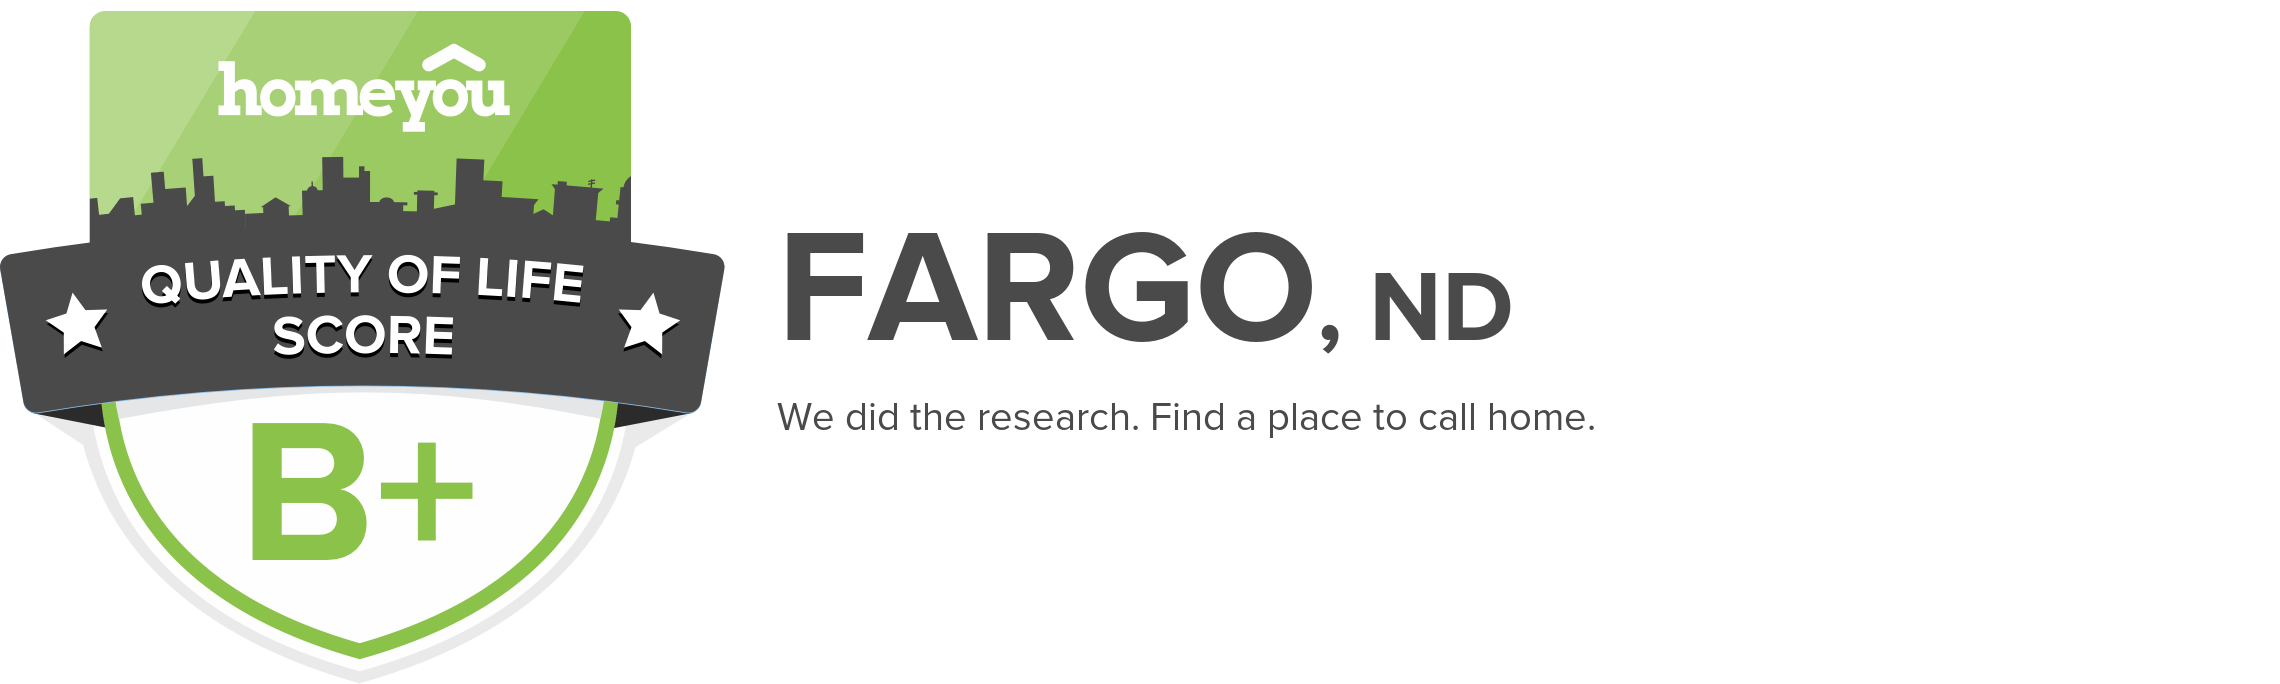 Fargo, ND